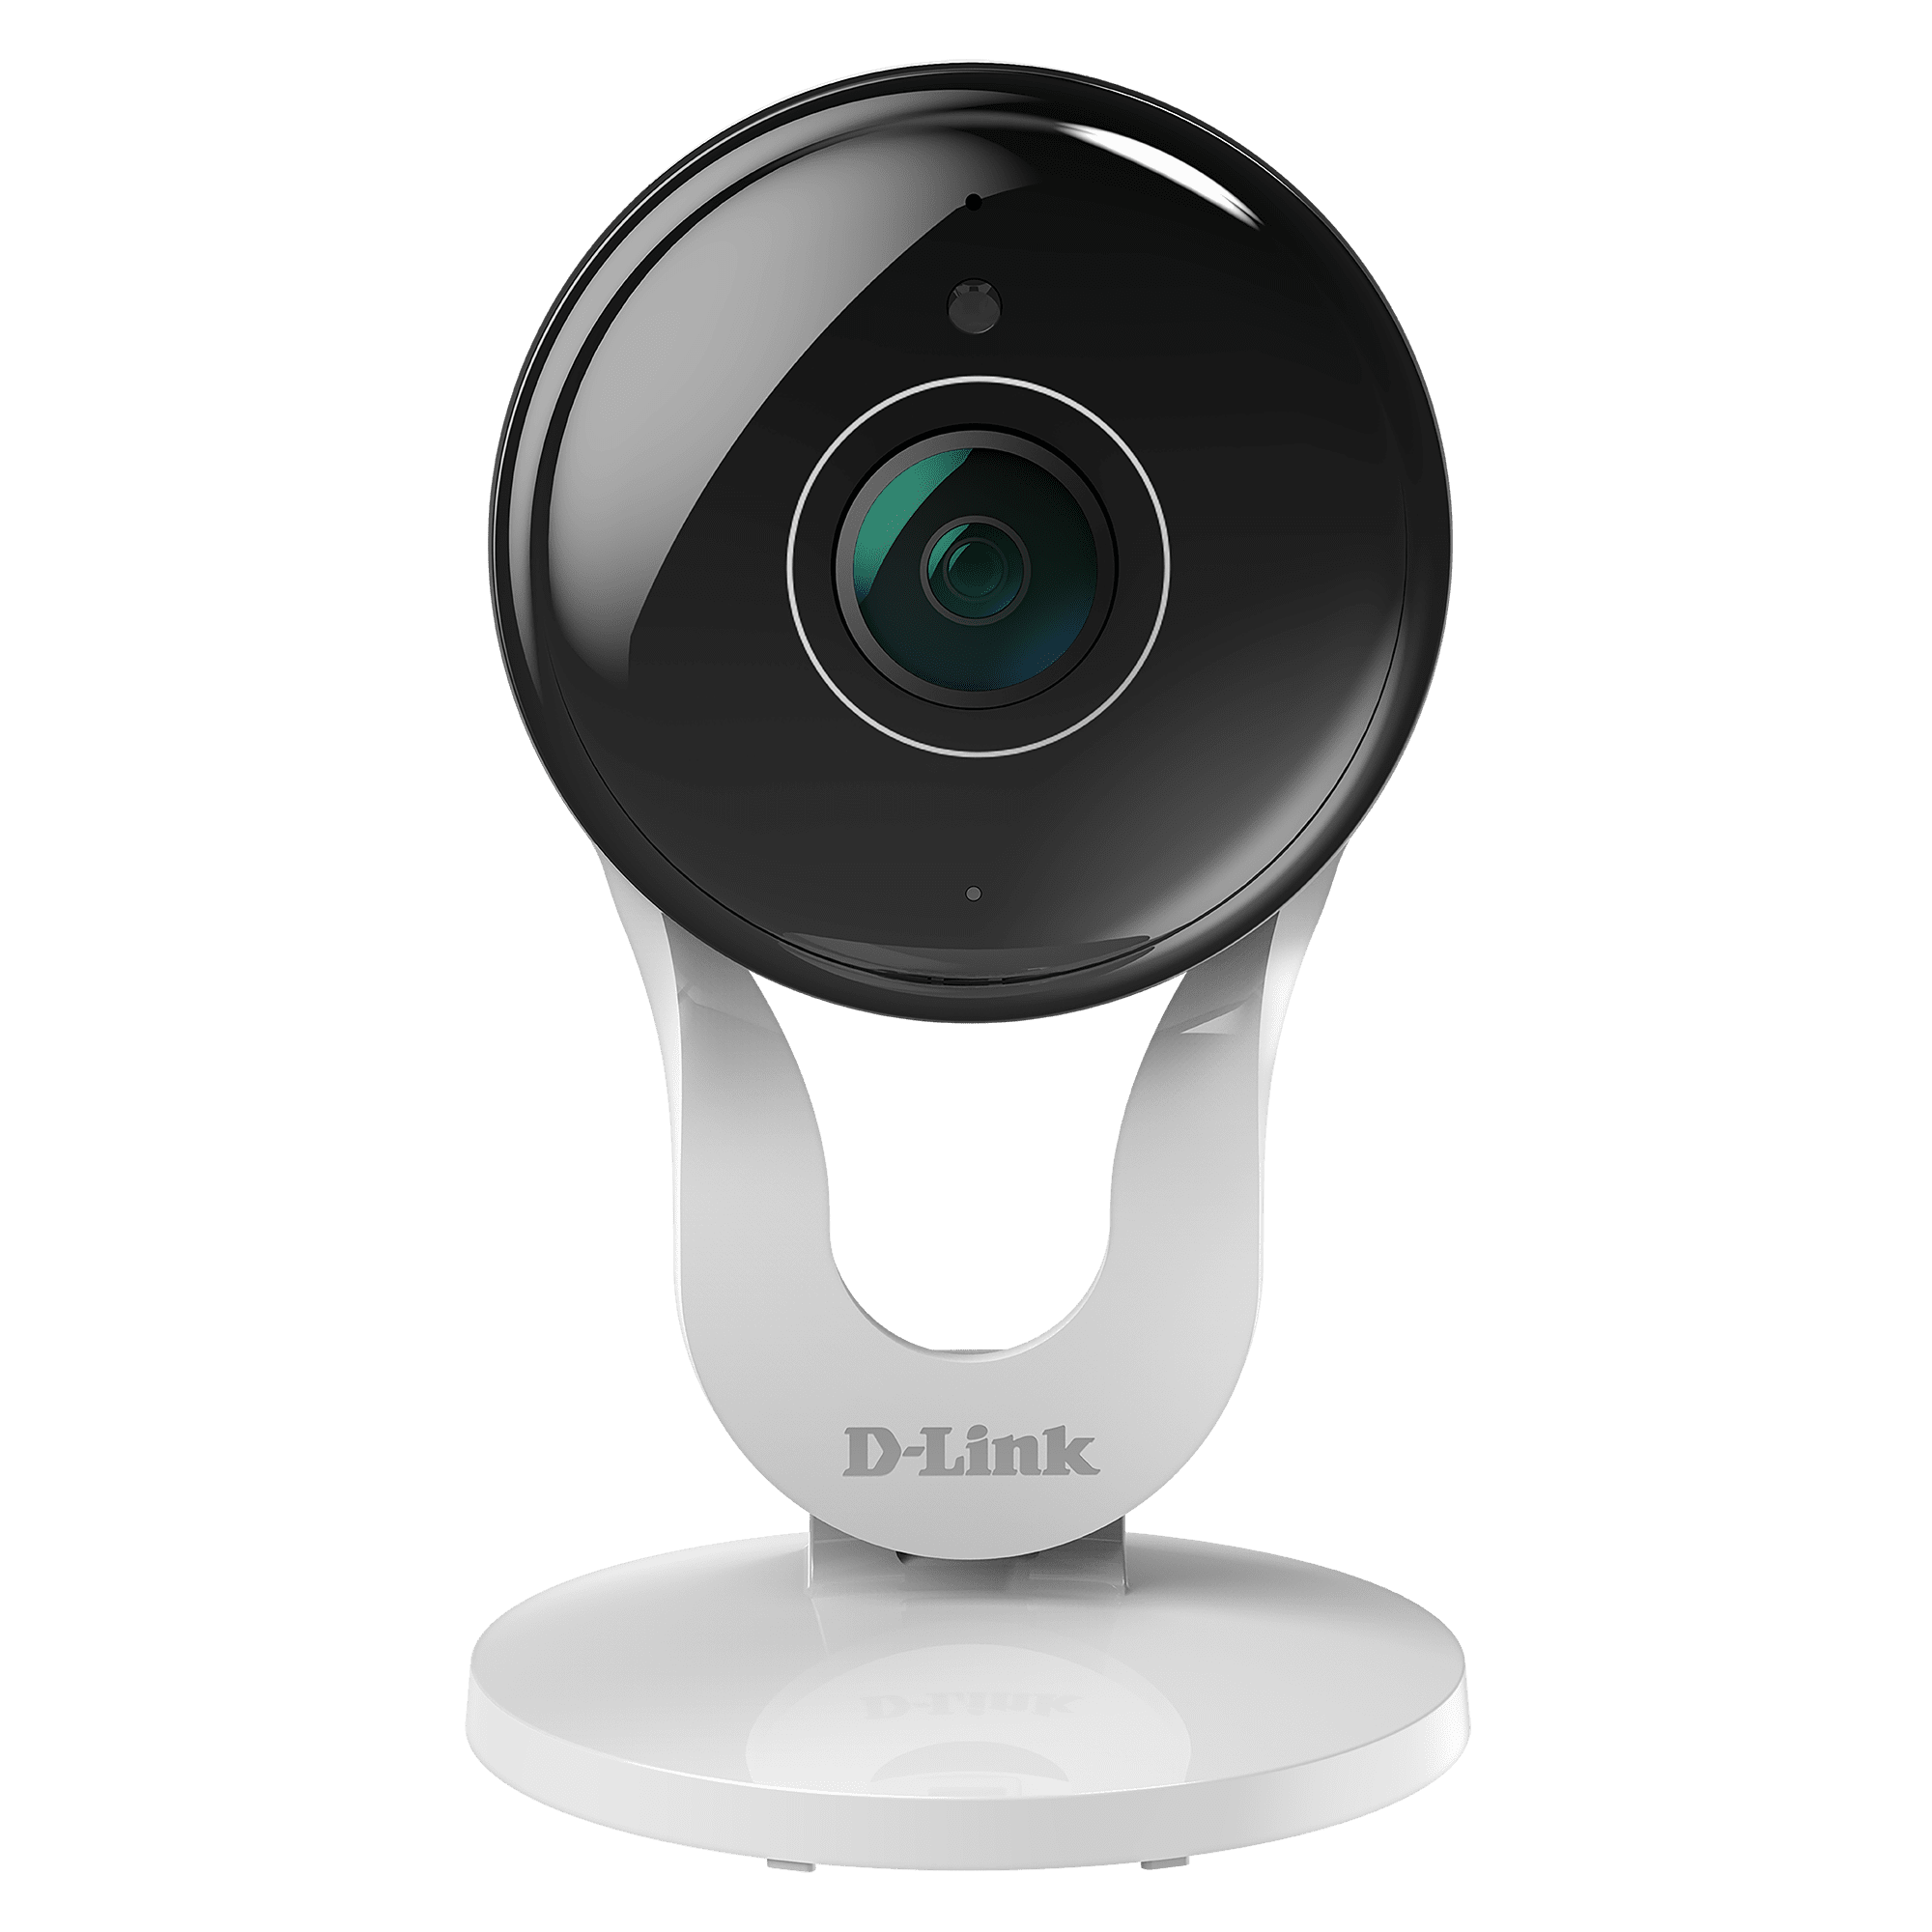 D-Link Wireless security camera IP security camera Indoor outdoor 1920 x 1080 